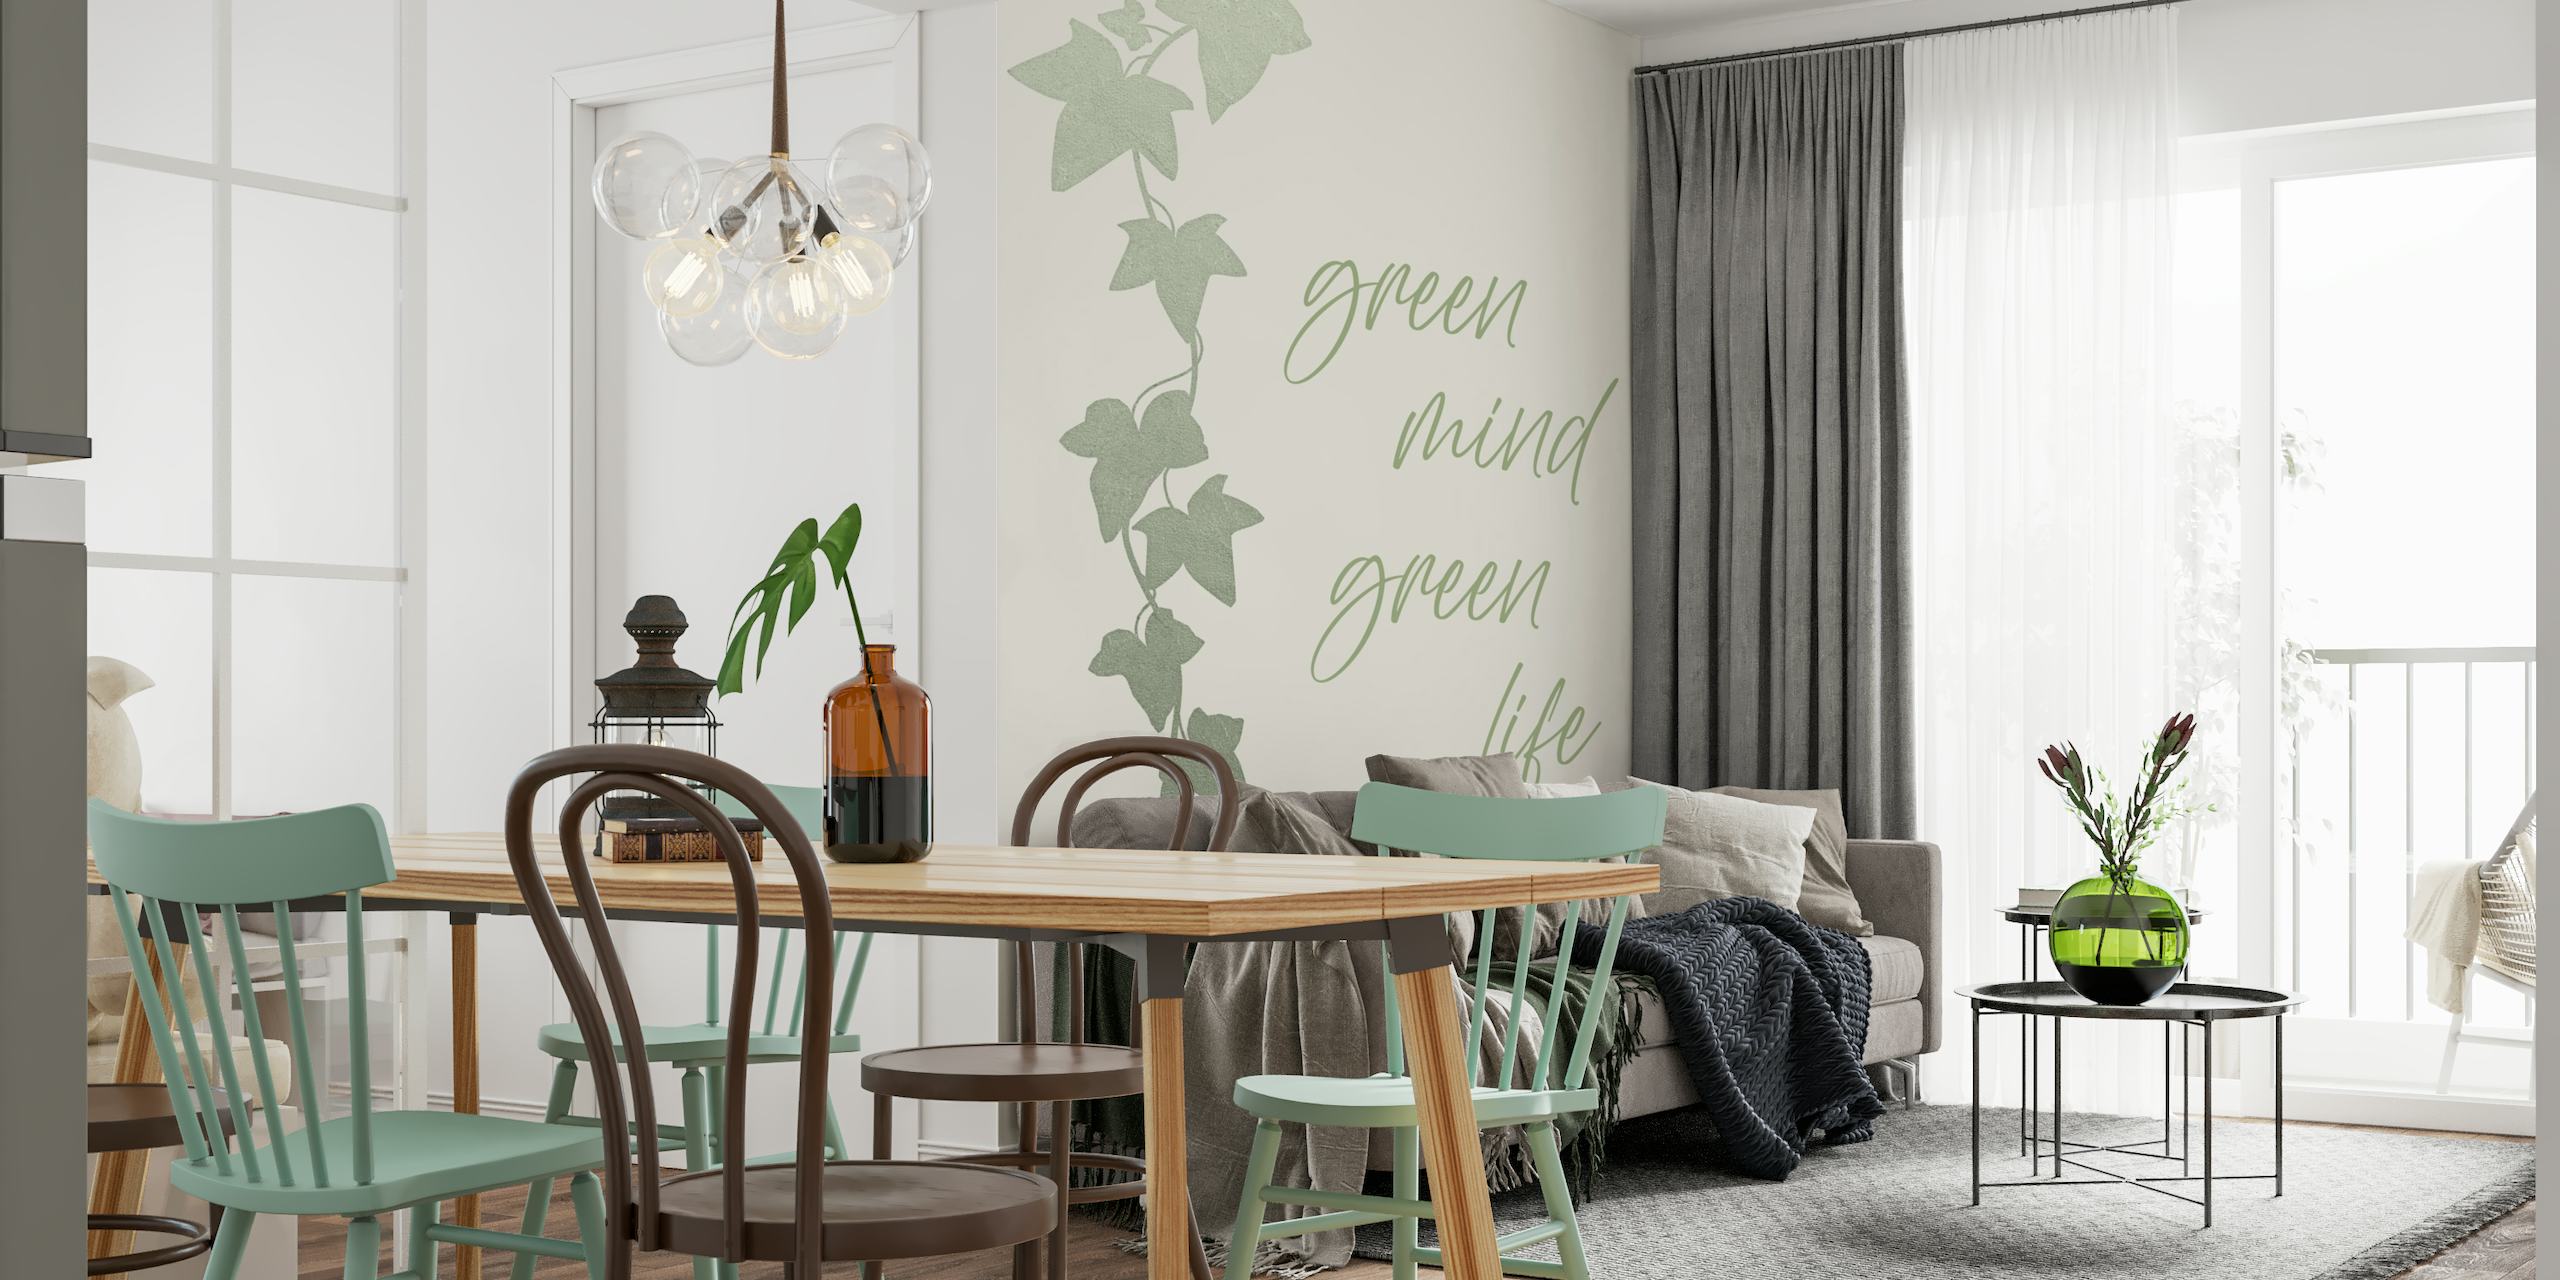 Vihreä muratti lehtiä seinämaalaus "Green mind - Green life" käsikirjoitus